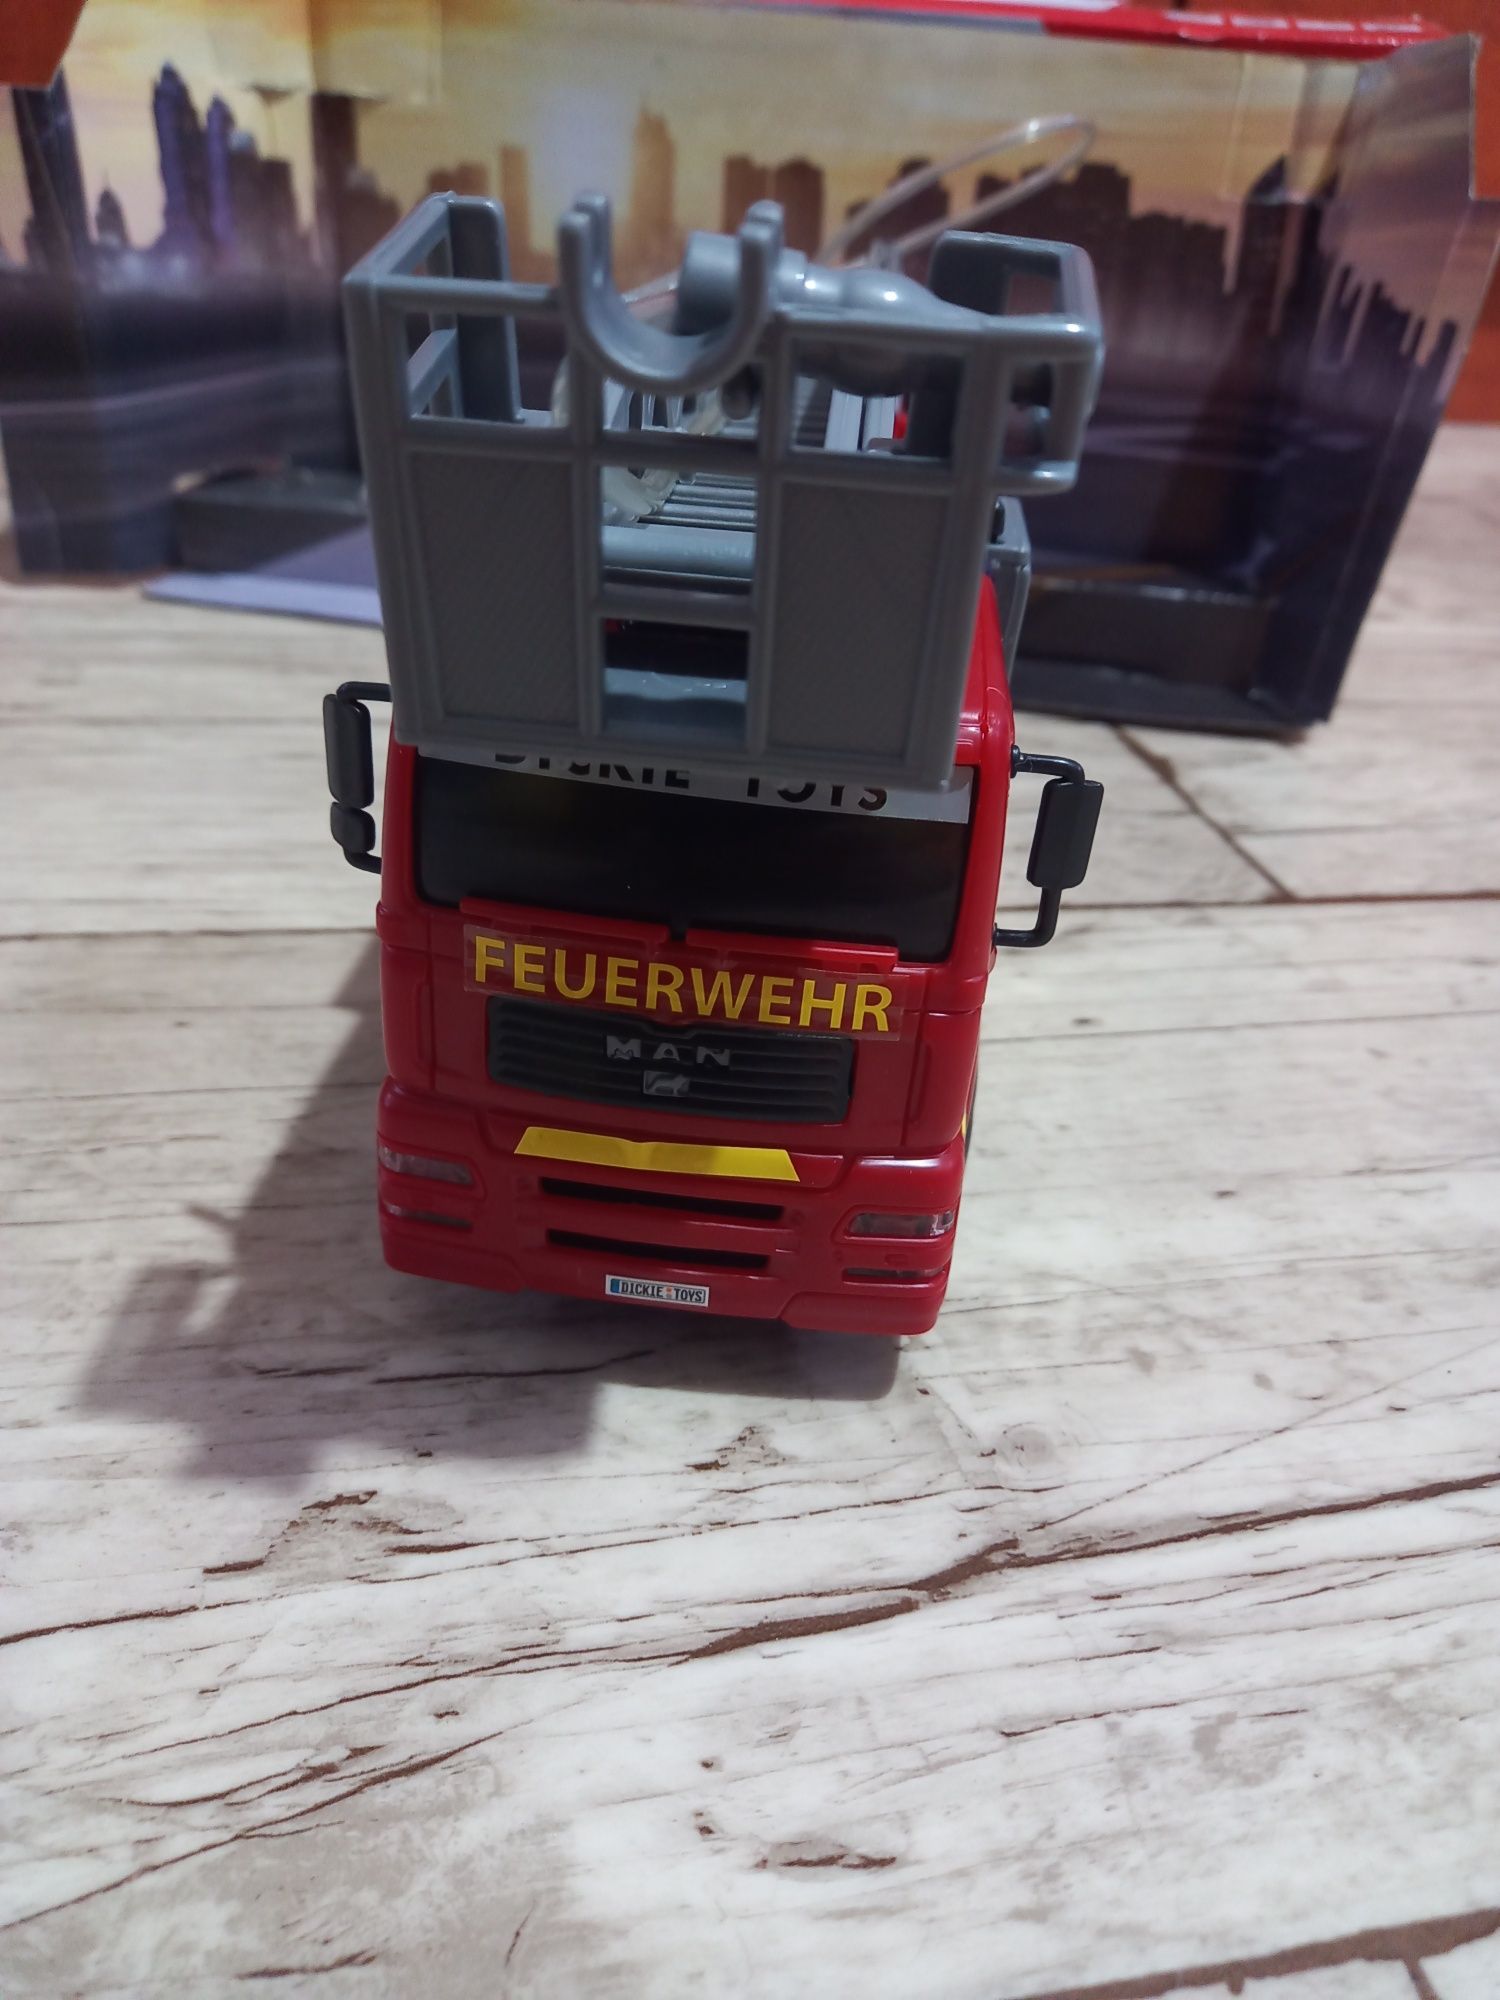 Wóz strażacki Dickie Toys z sygnalizacją świetlno-dzwiękową